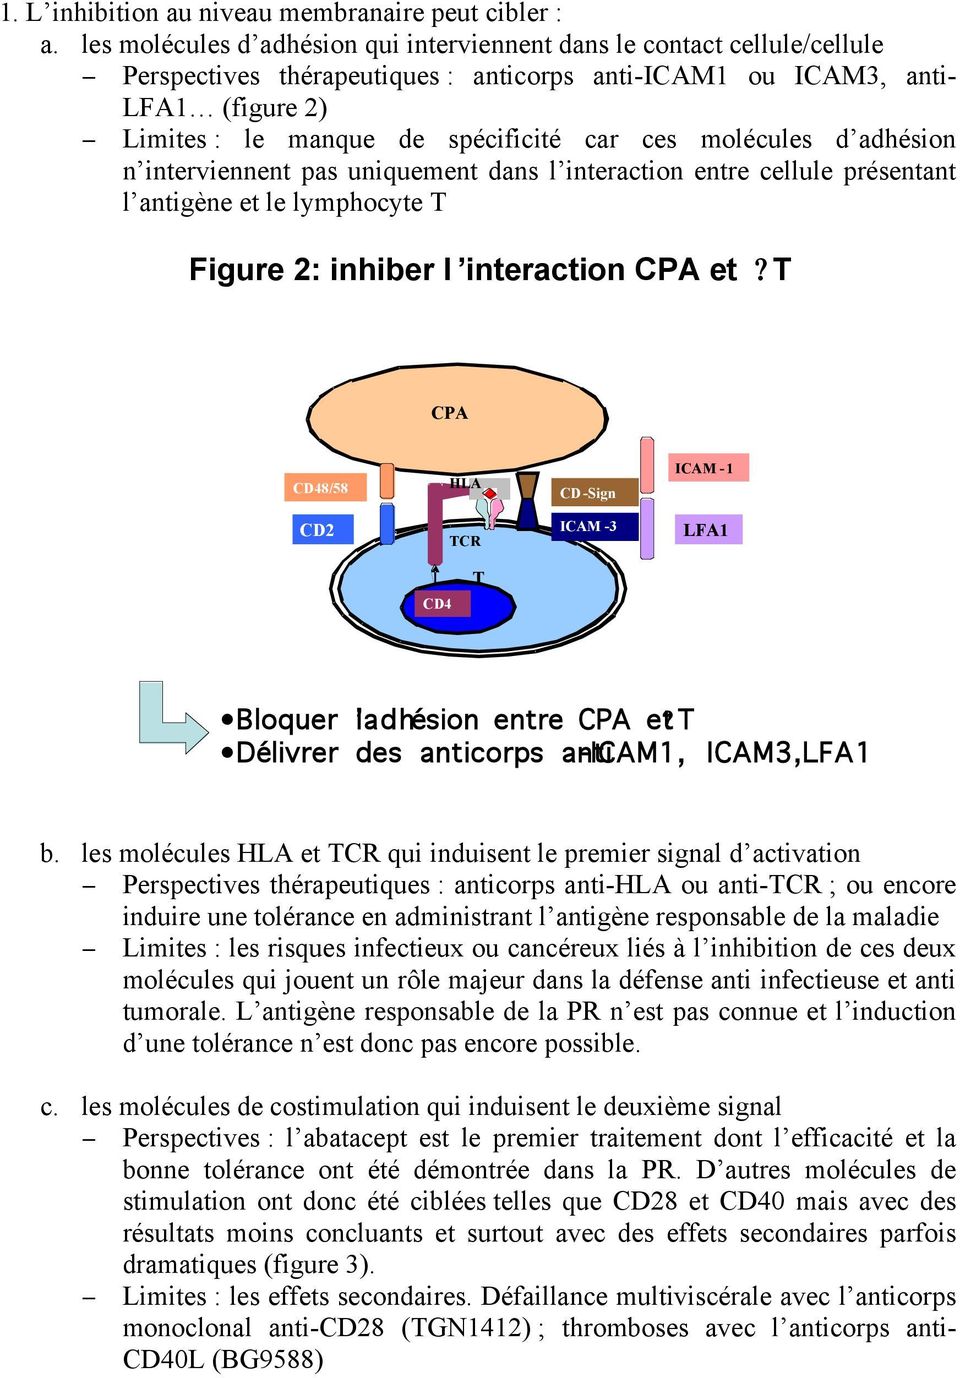 ces molécules d adhésion n interviennent pas uniquement dans l interaction entre cellule présentant l antigène et le lymphocyte T Figure 2: inhiber l interaction CPA et?